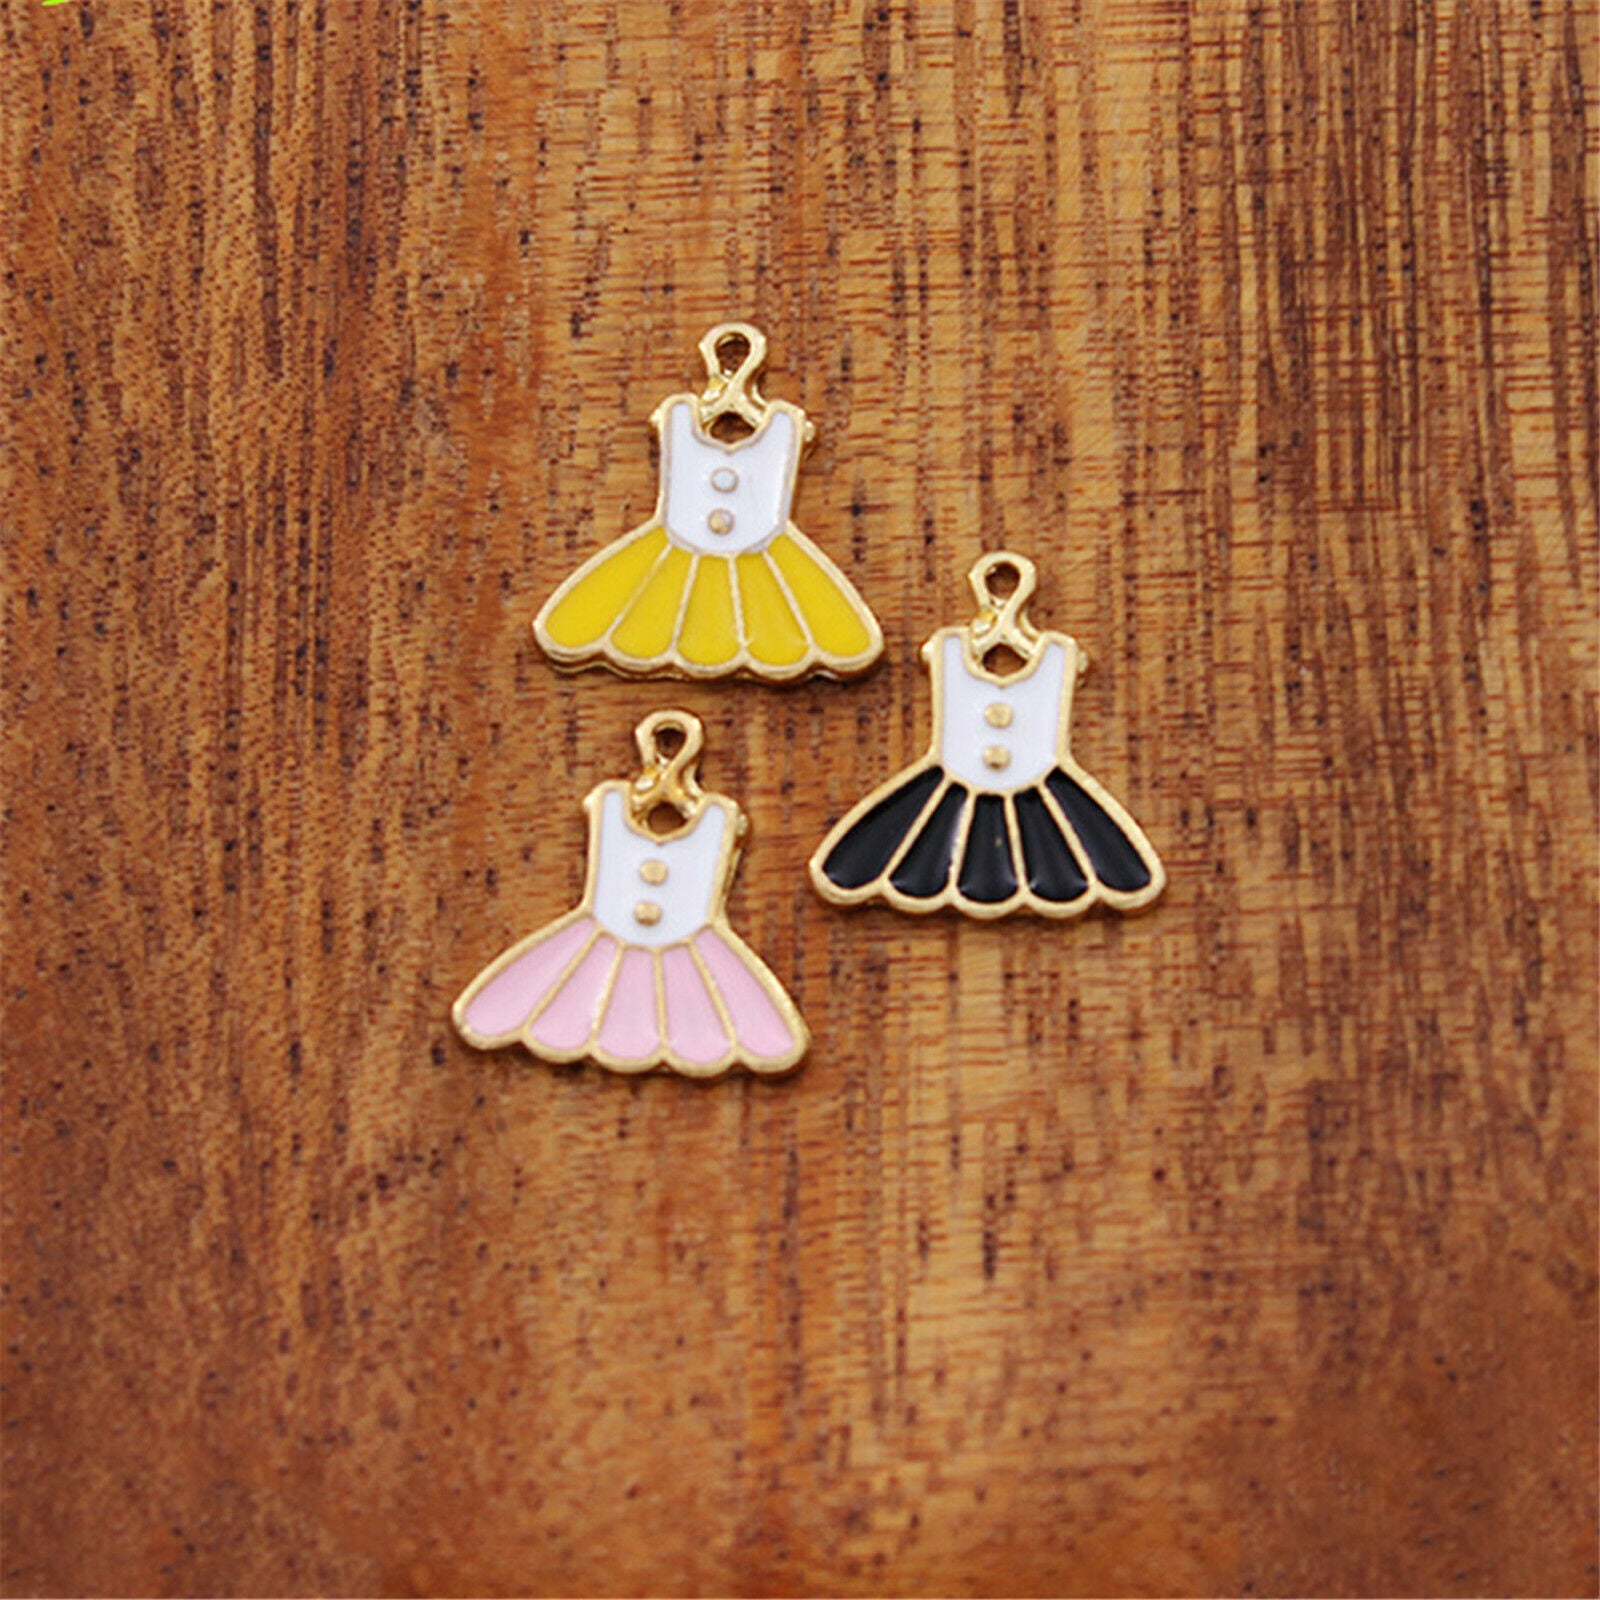 Wholesale Enamel Mixed Princess Dress Pendant Charm for Necklace Bracelet 12pcs